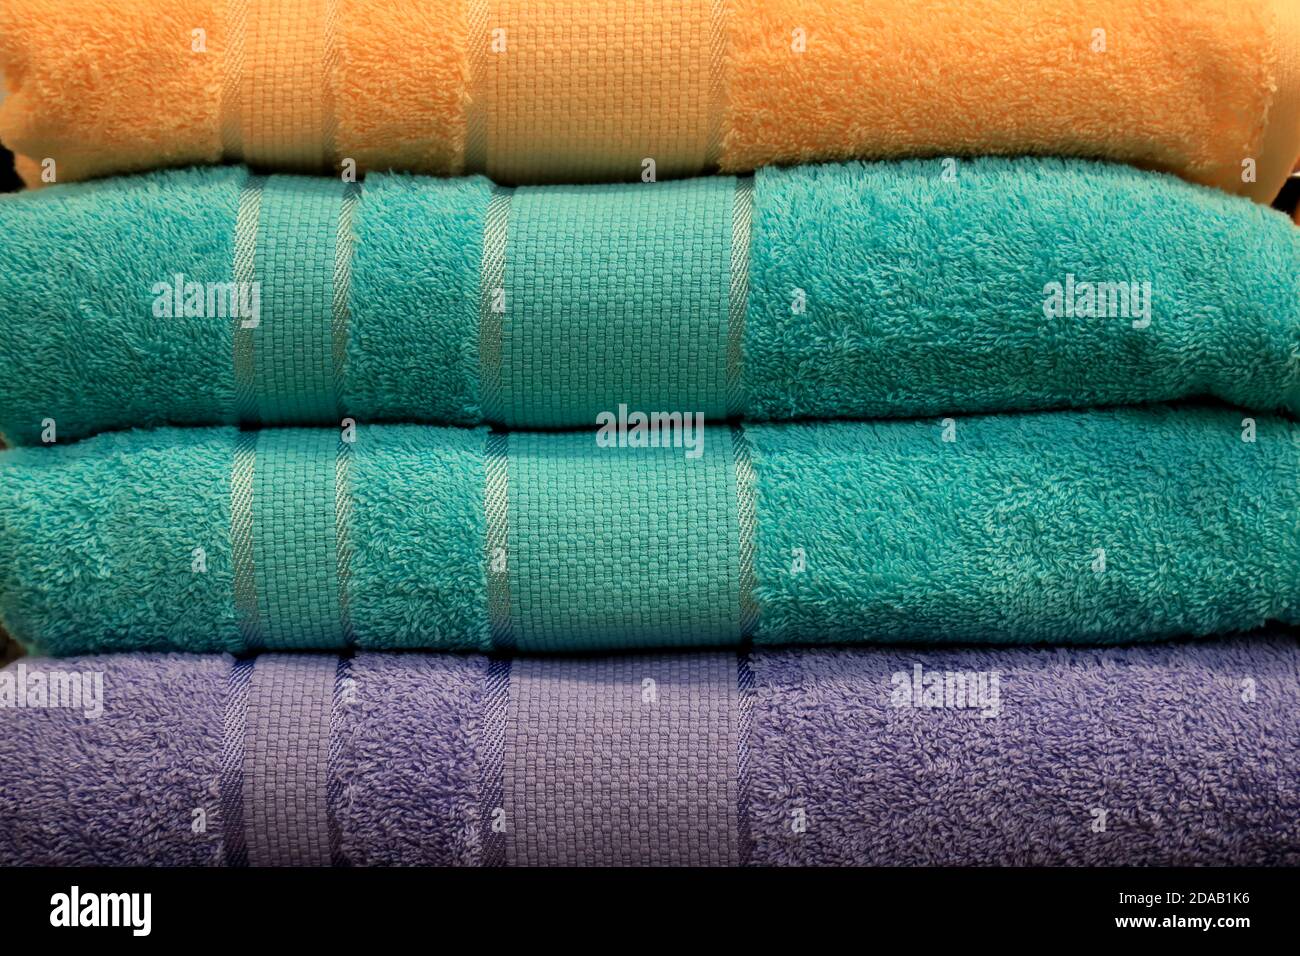 Ein Stapel Frottee Handtücher liegt auf einem Regal im Bad, Spa, Kleiderschrank, Wäscherei, Shop. Hygieneartikel, weiche Badetücher im Supermarkt in grün Stockfoto